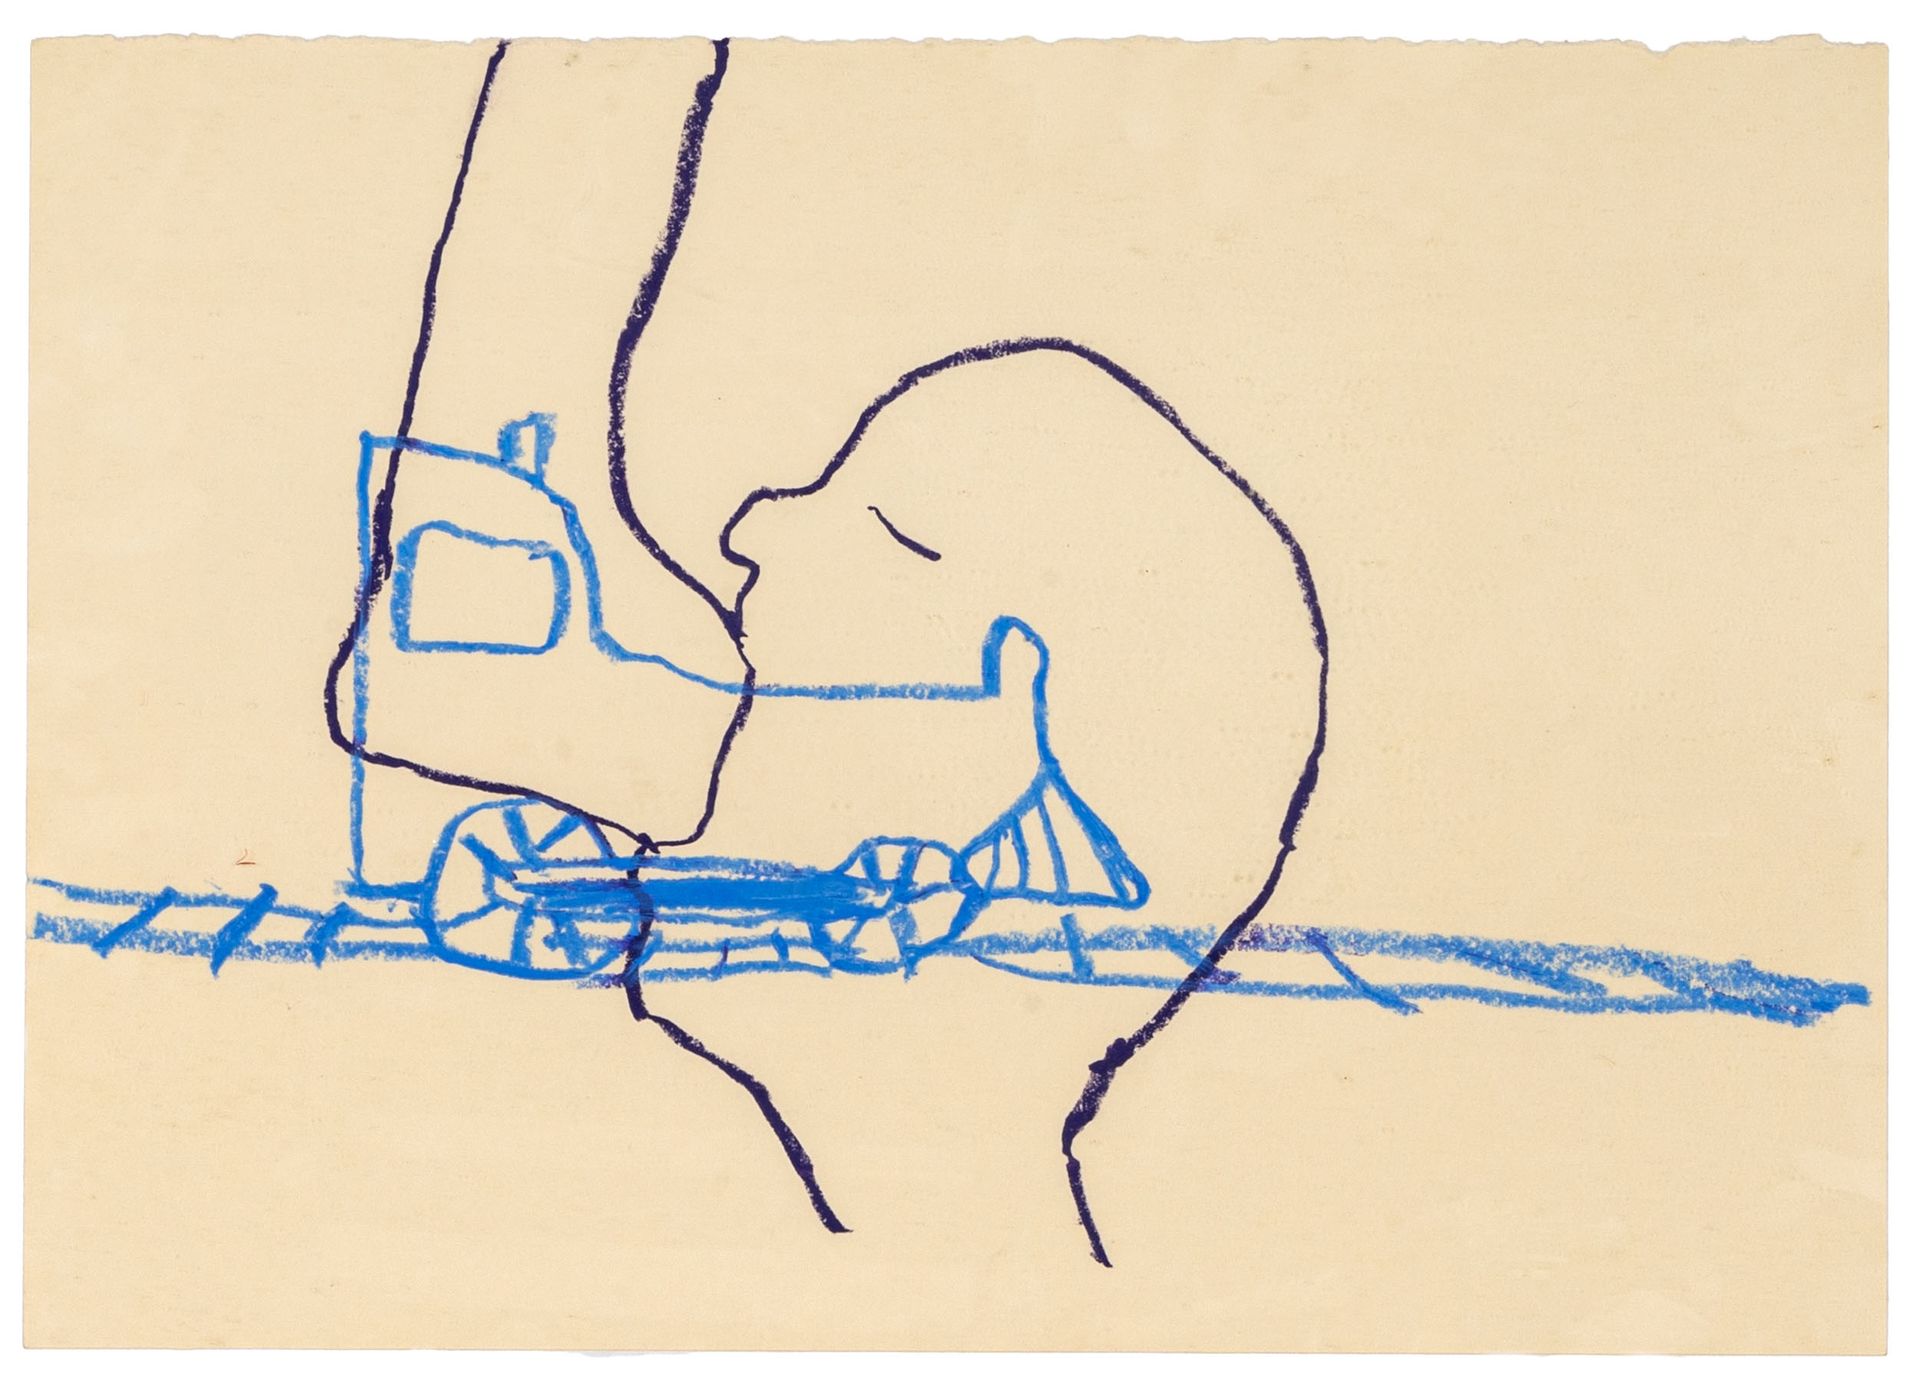 RYAN MENDOZA RYAN MENDOZA
(1971)
Sans titre
Crayon de cire sur papier
35 x 50 cm&hellip;